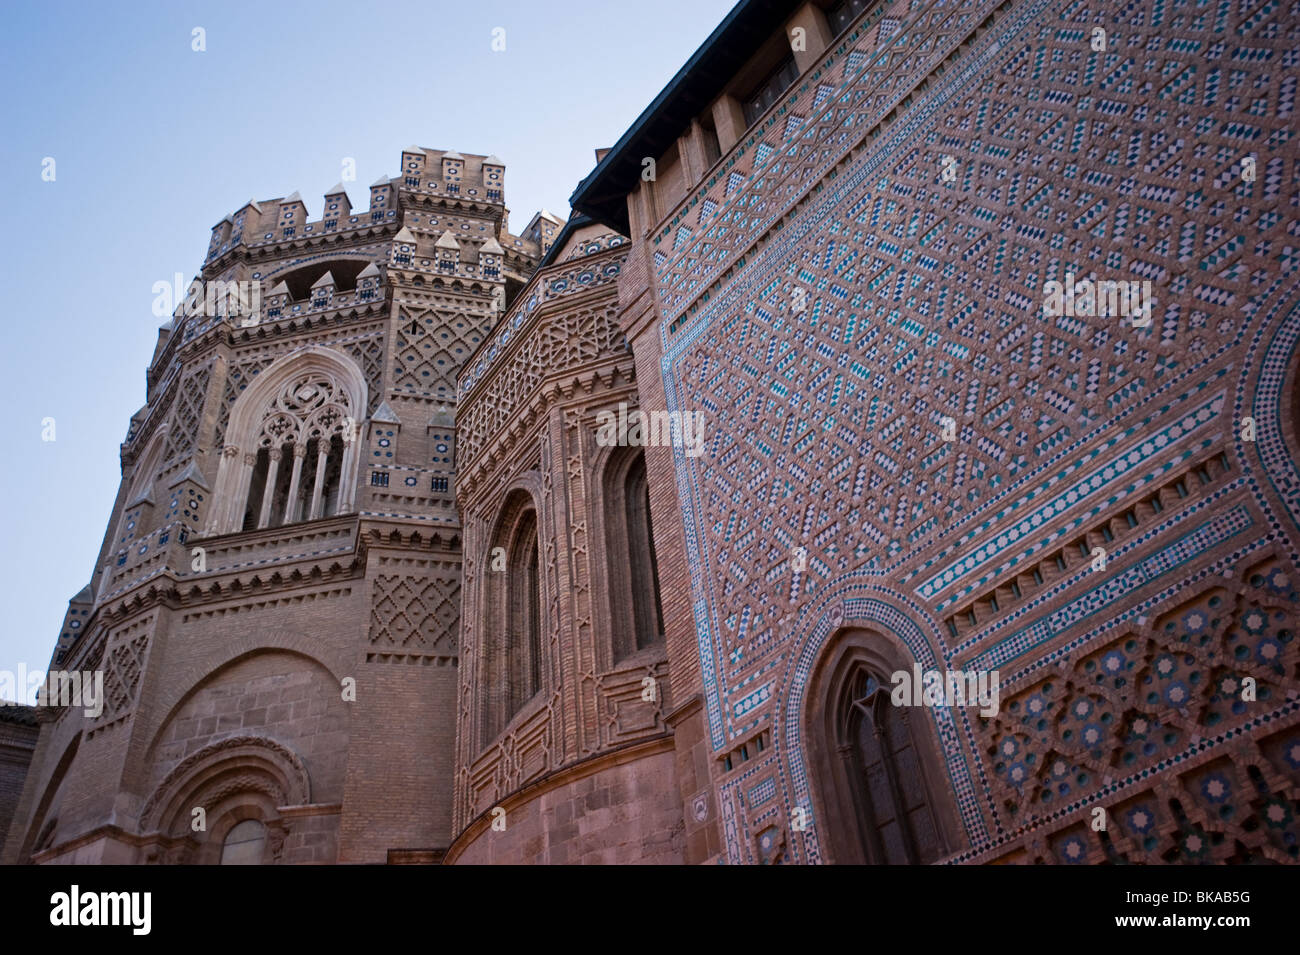 Dettagli architettonici di La Cattedrale di Seo, Zaragoza Spagna Foto Stock